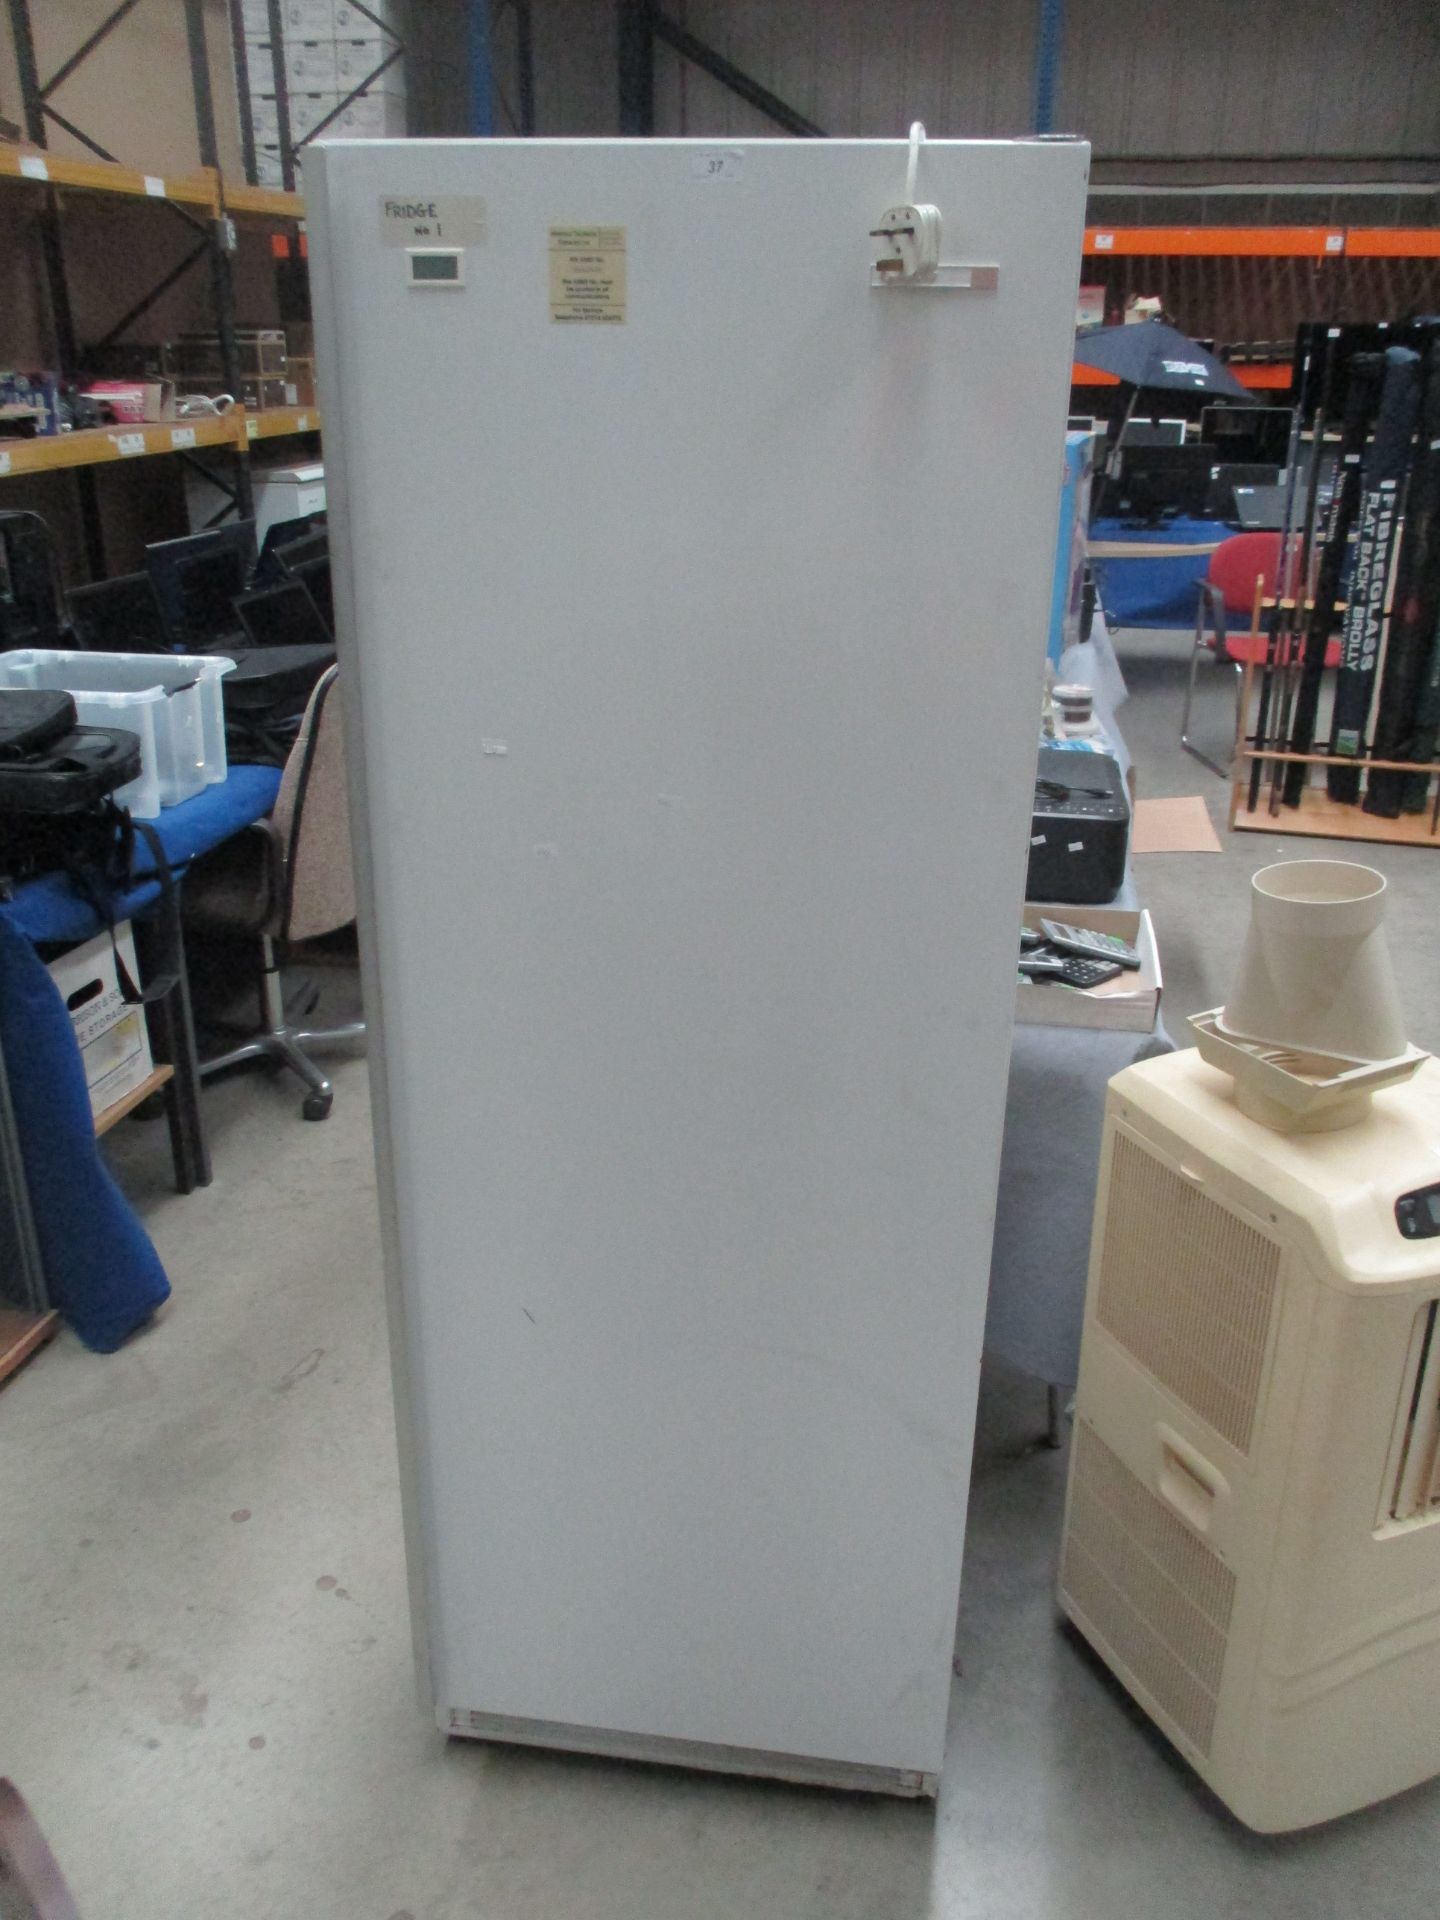 A Gram K400 white commercial fridge